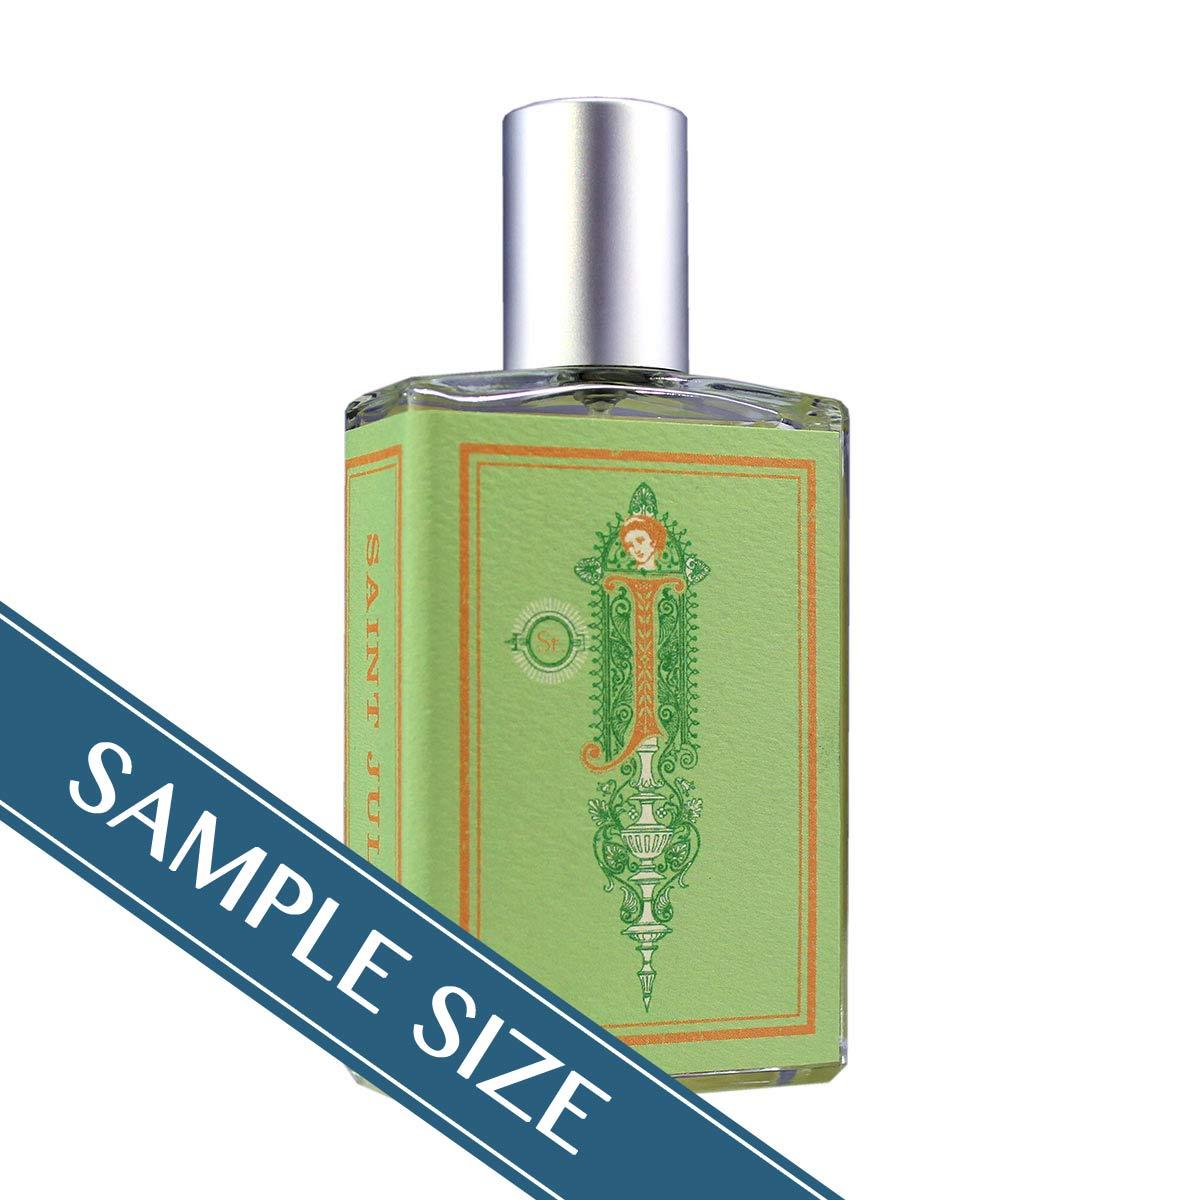 Primary image of Sample - Saint Julep Eau de Parfum